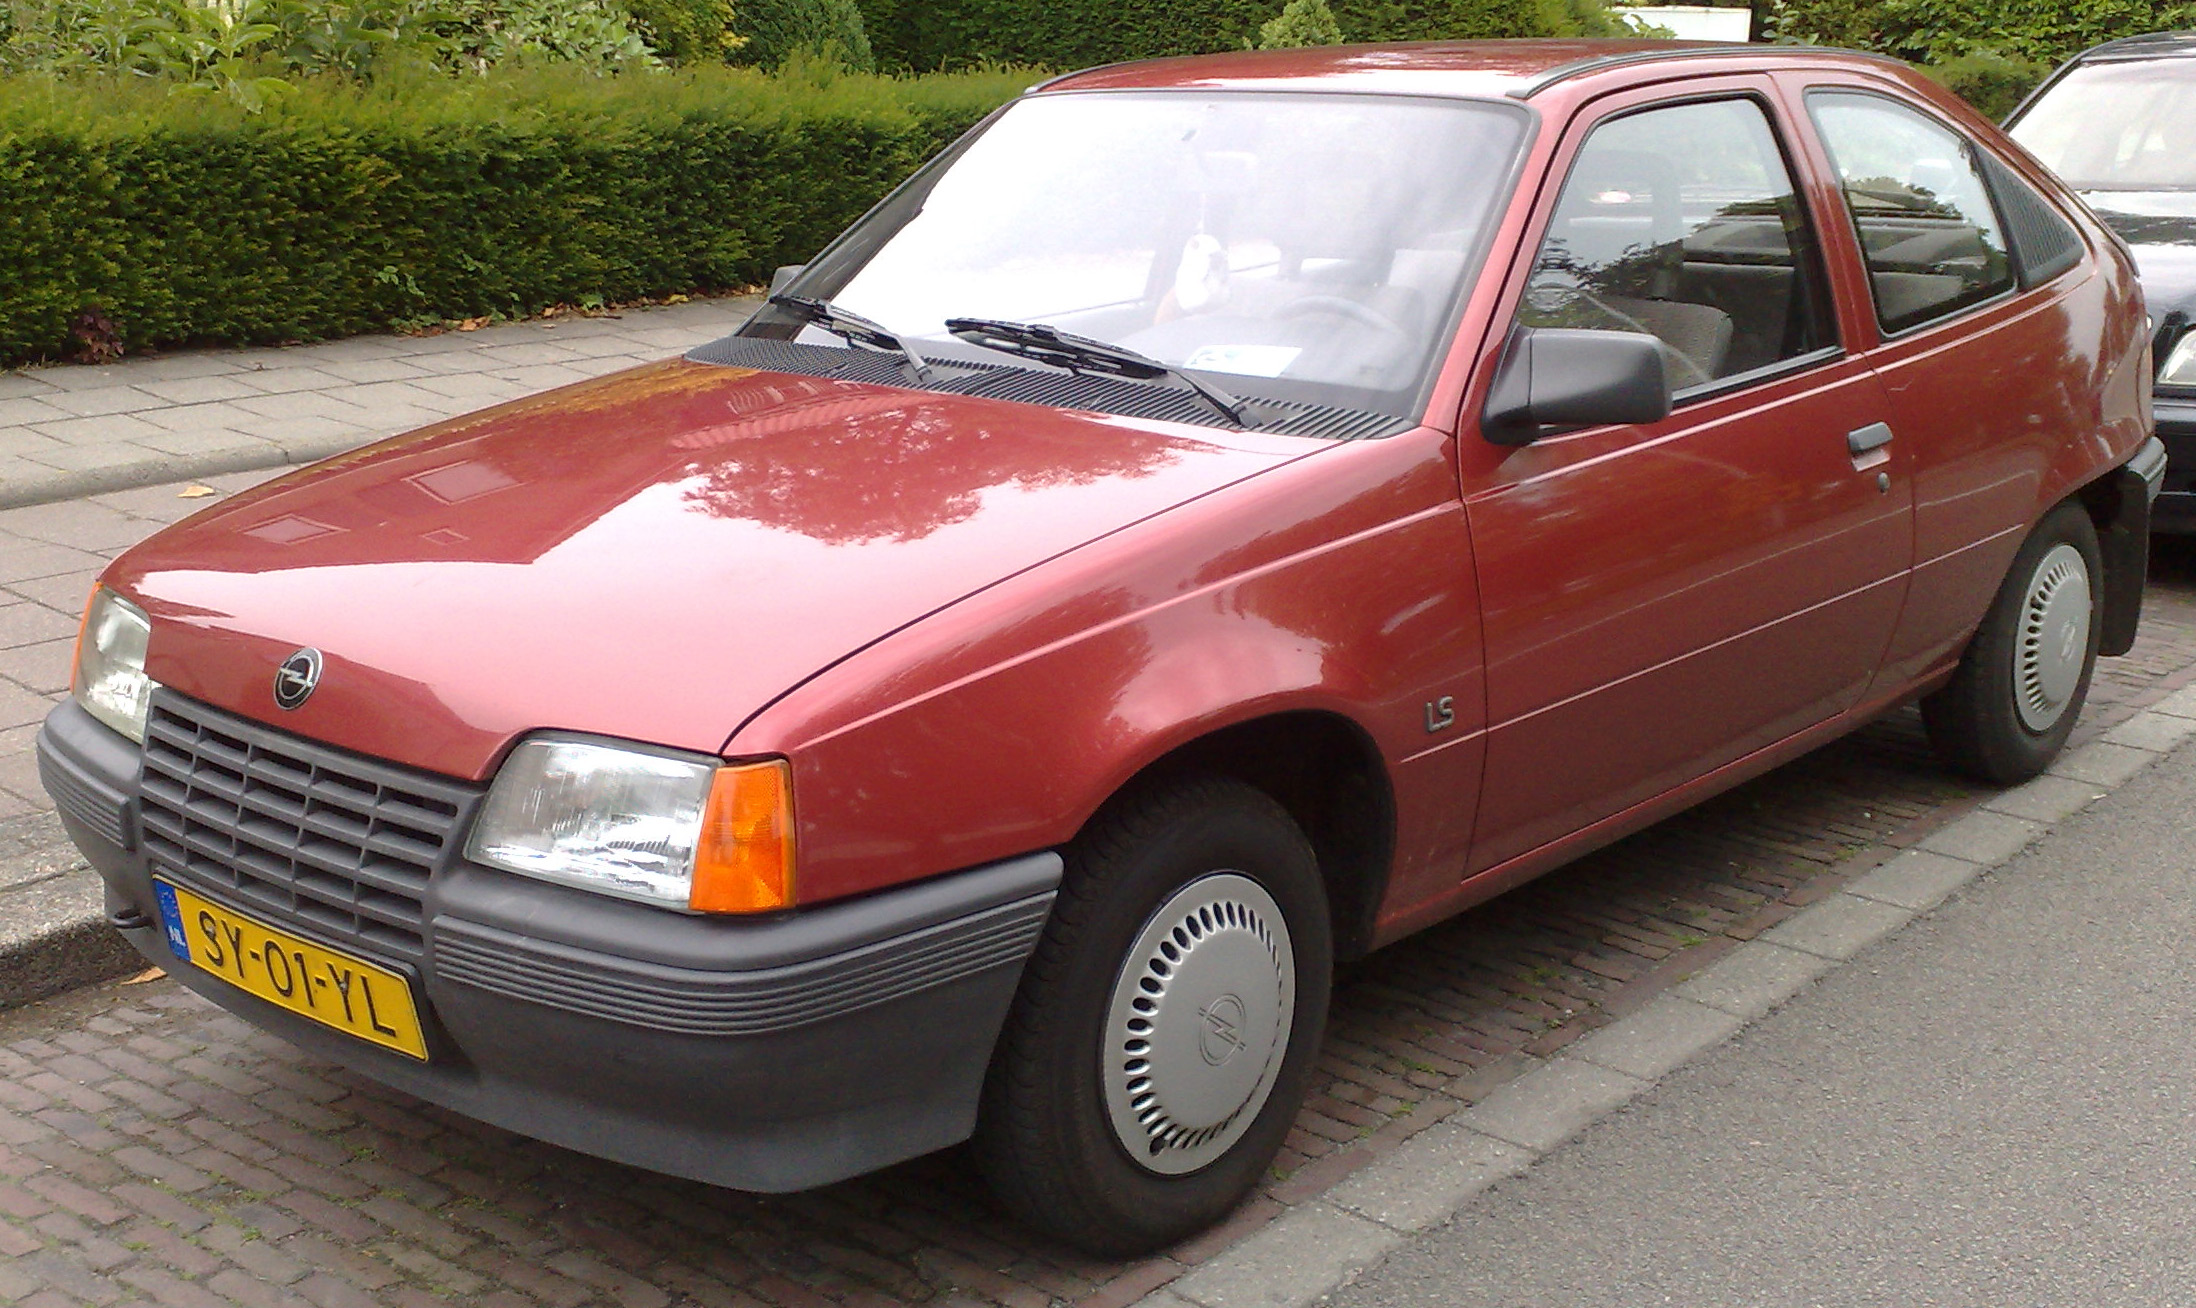 Opel kadett ls (691 commentaires) Vues 15153 Évaluation 74